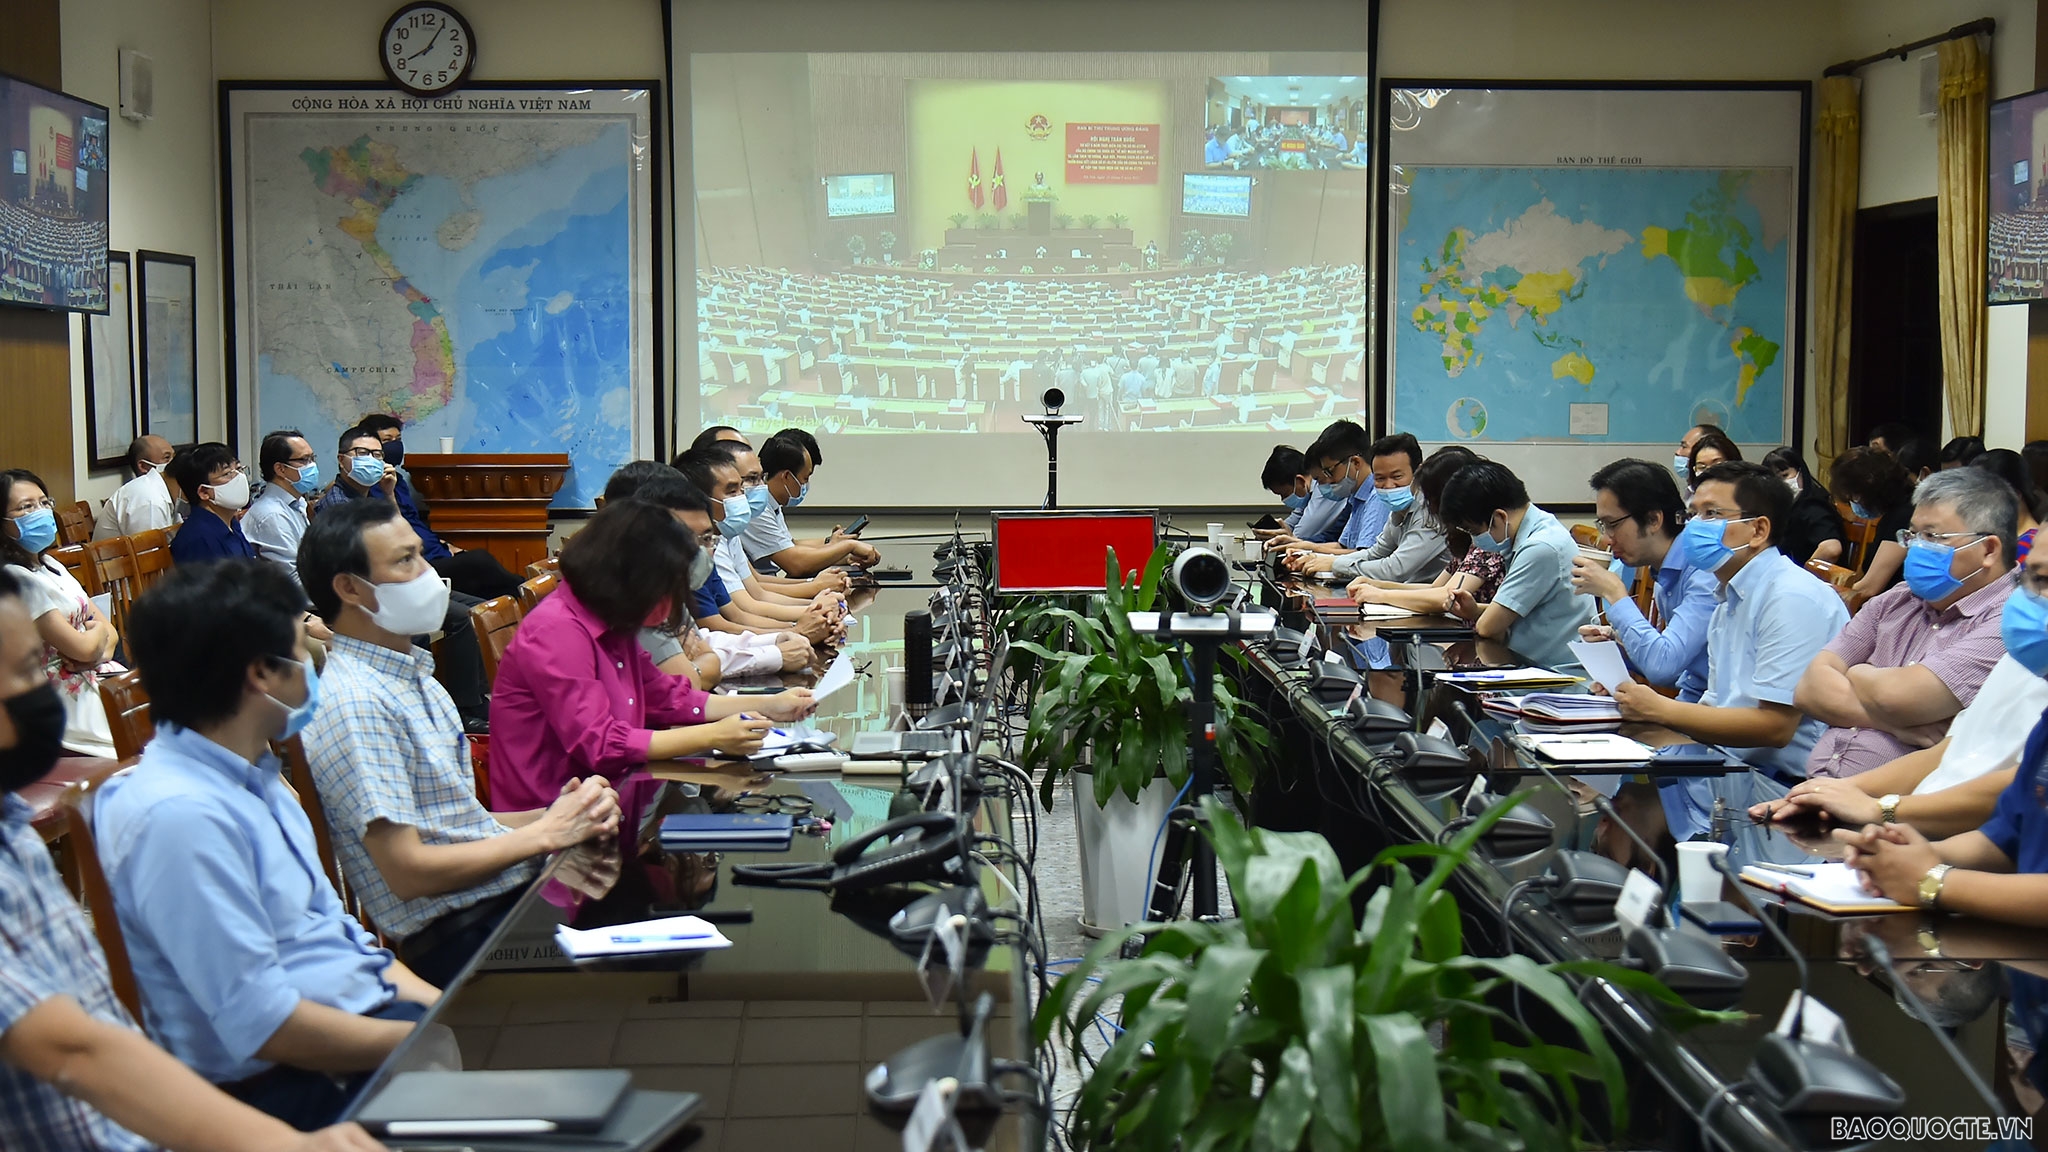 Đảng ủy Bộ Ngoại giao dự Hội nghị trực tuyến học tập và làm theo tư tưởng, đạo đức, phong cách Hồ Chí Minh theo Chỉ thị 05-CT/TW